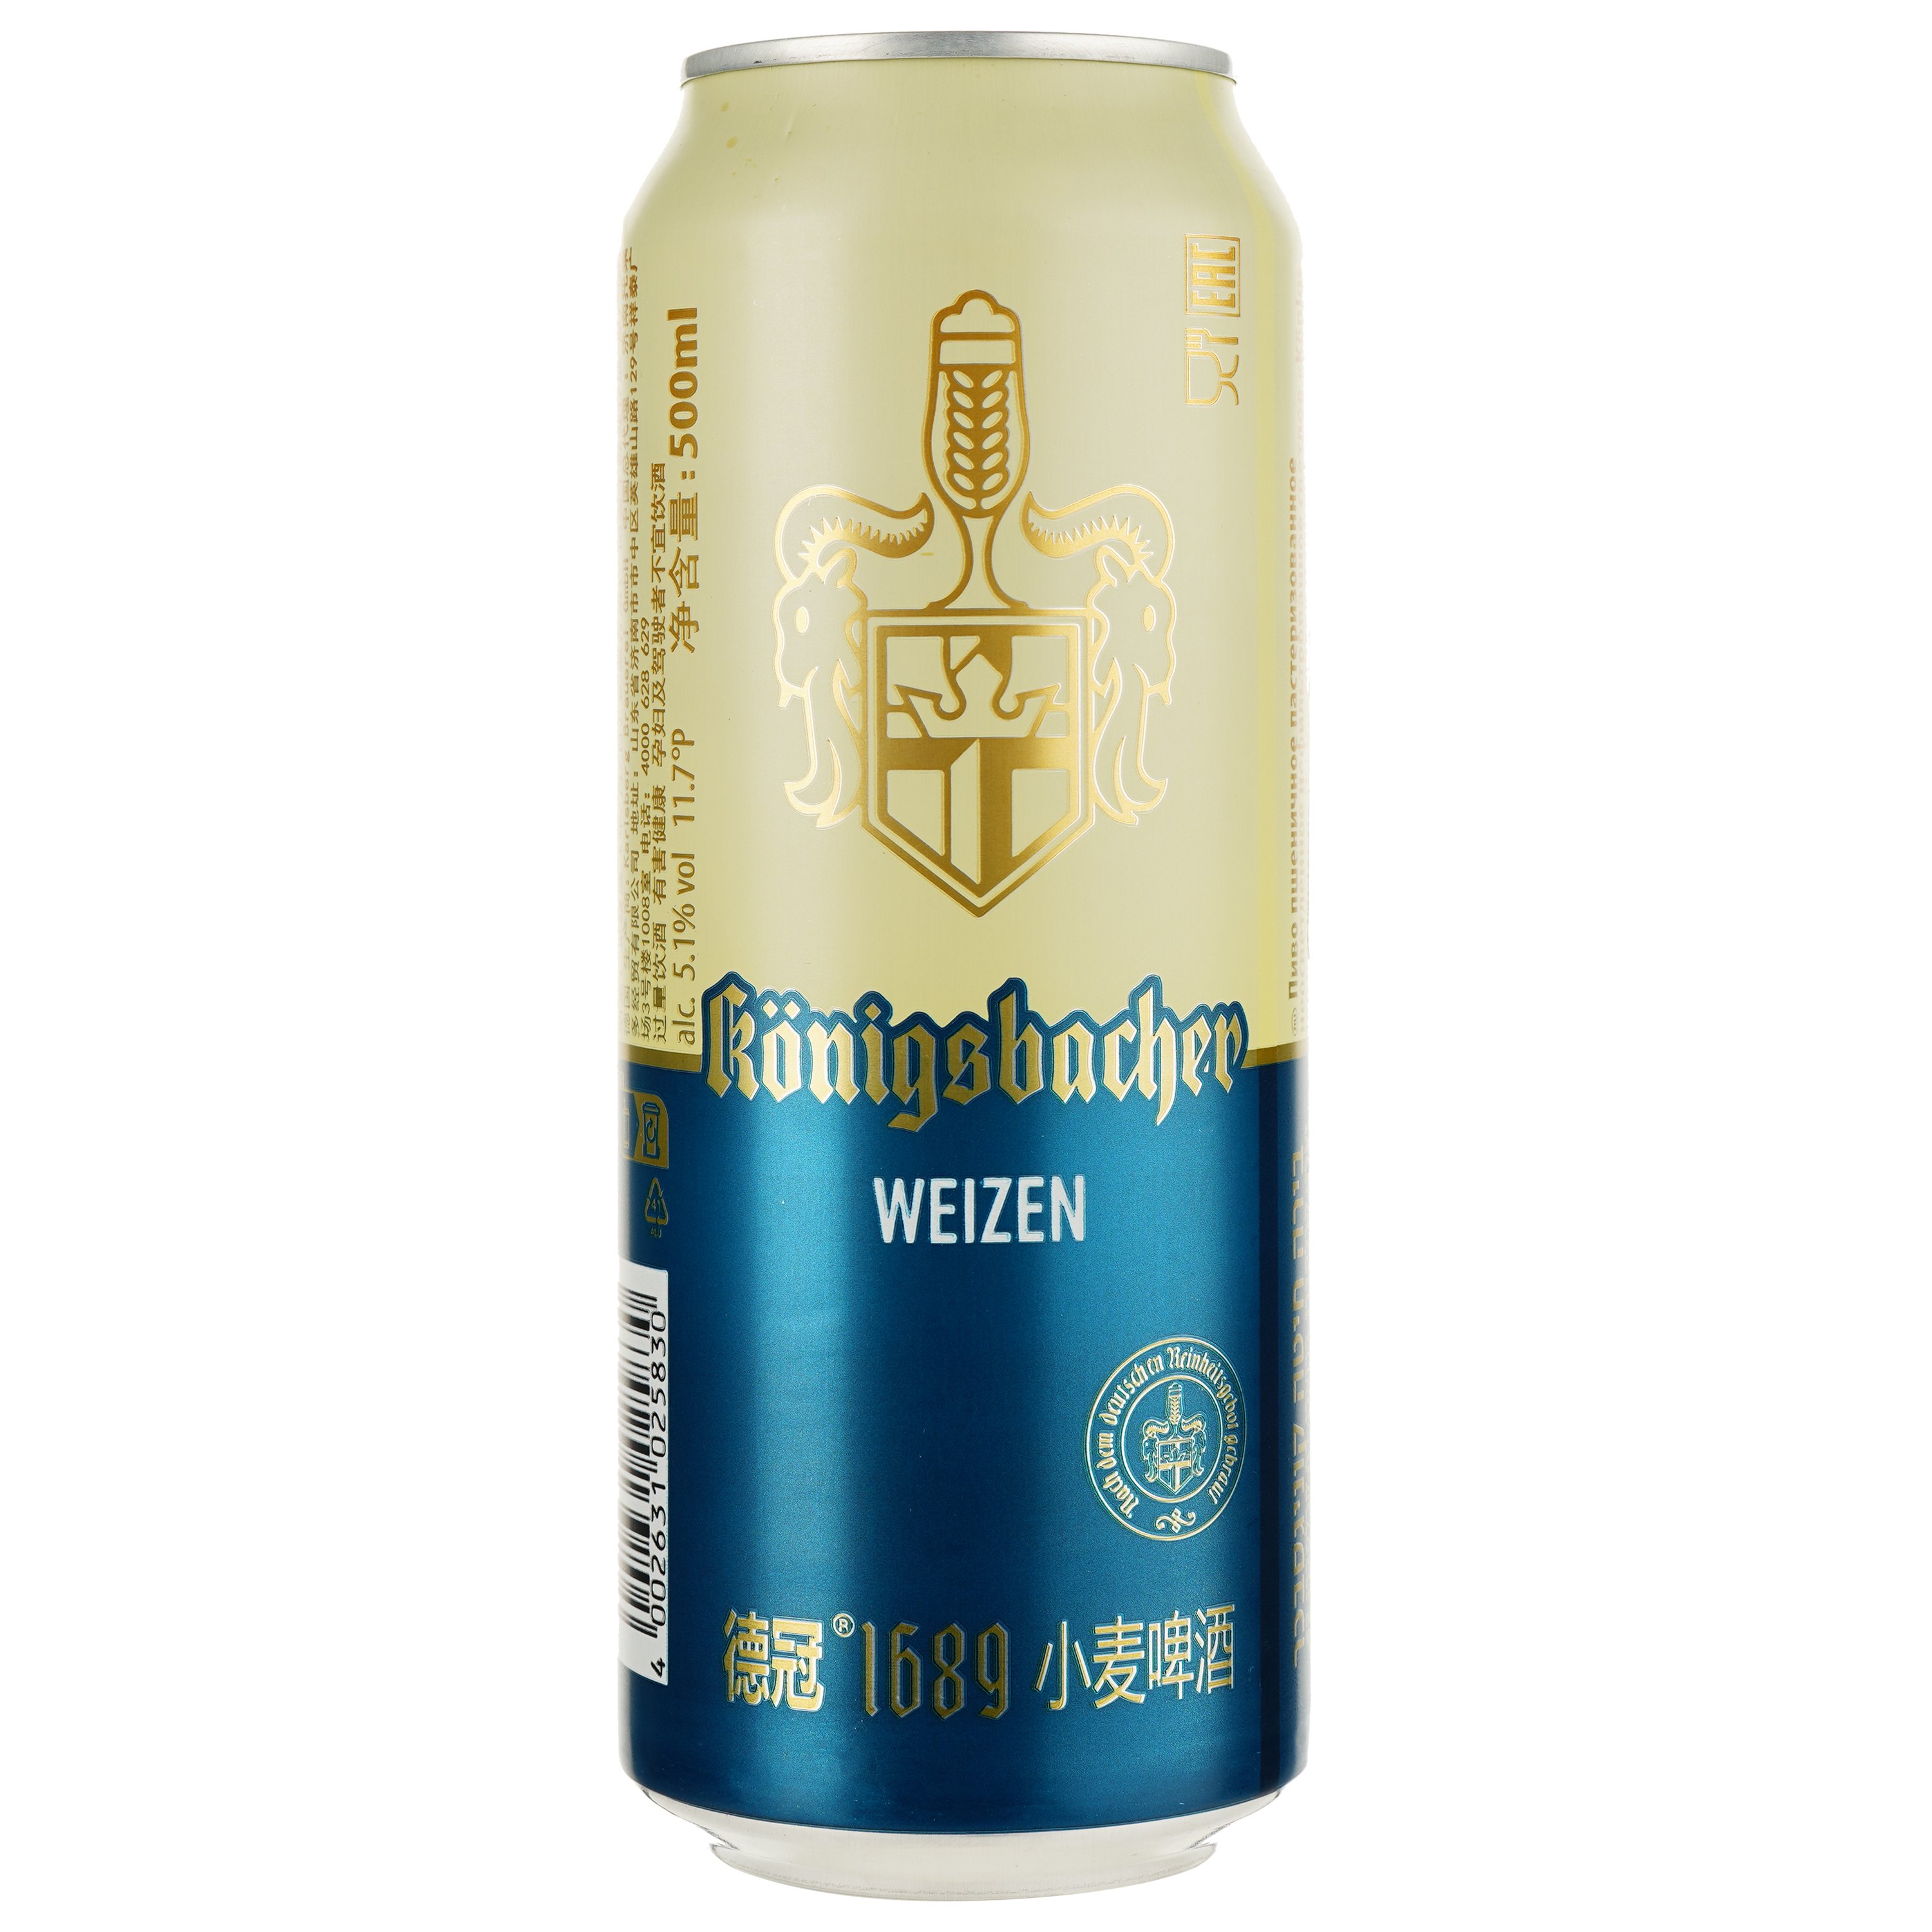 Пиво Konigsbacher Weizen світле 5.1% 0.5 л з/б - фото 1